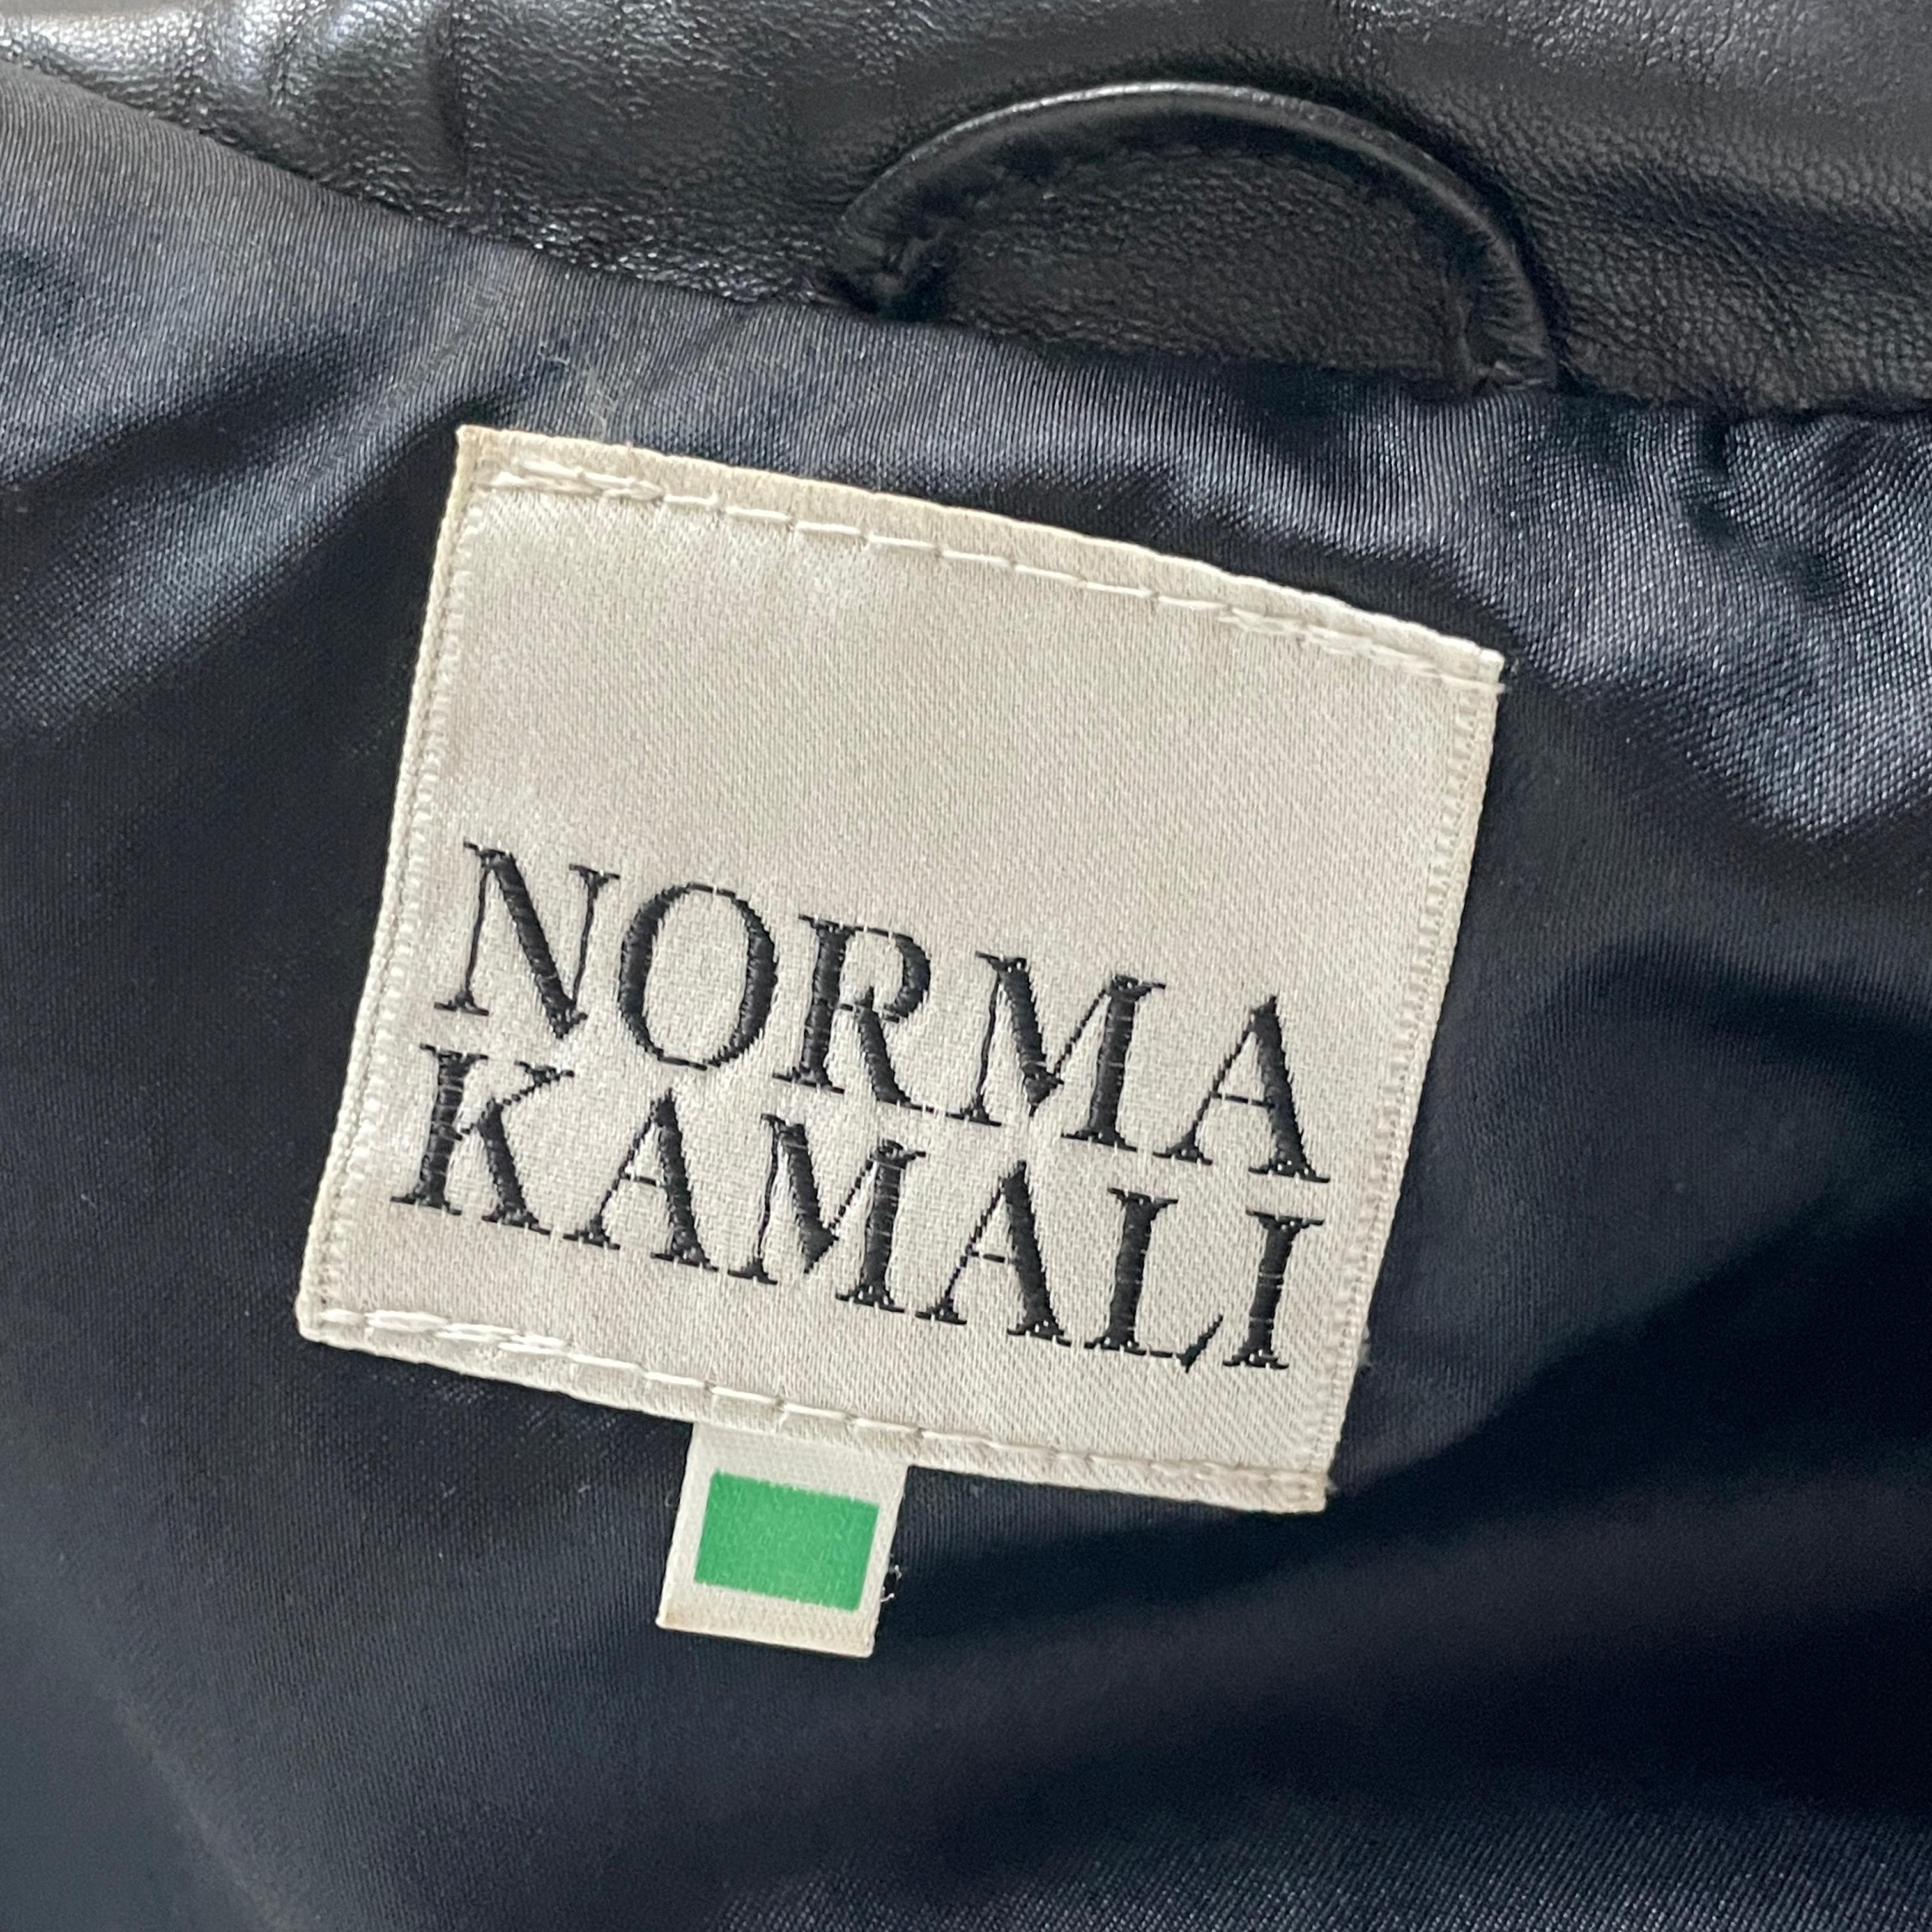 Norma Kamali Leather Jacket Black Cropped Fringe Vintage 1990s Rare Rocker Chic For Sale 8